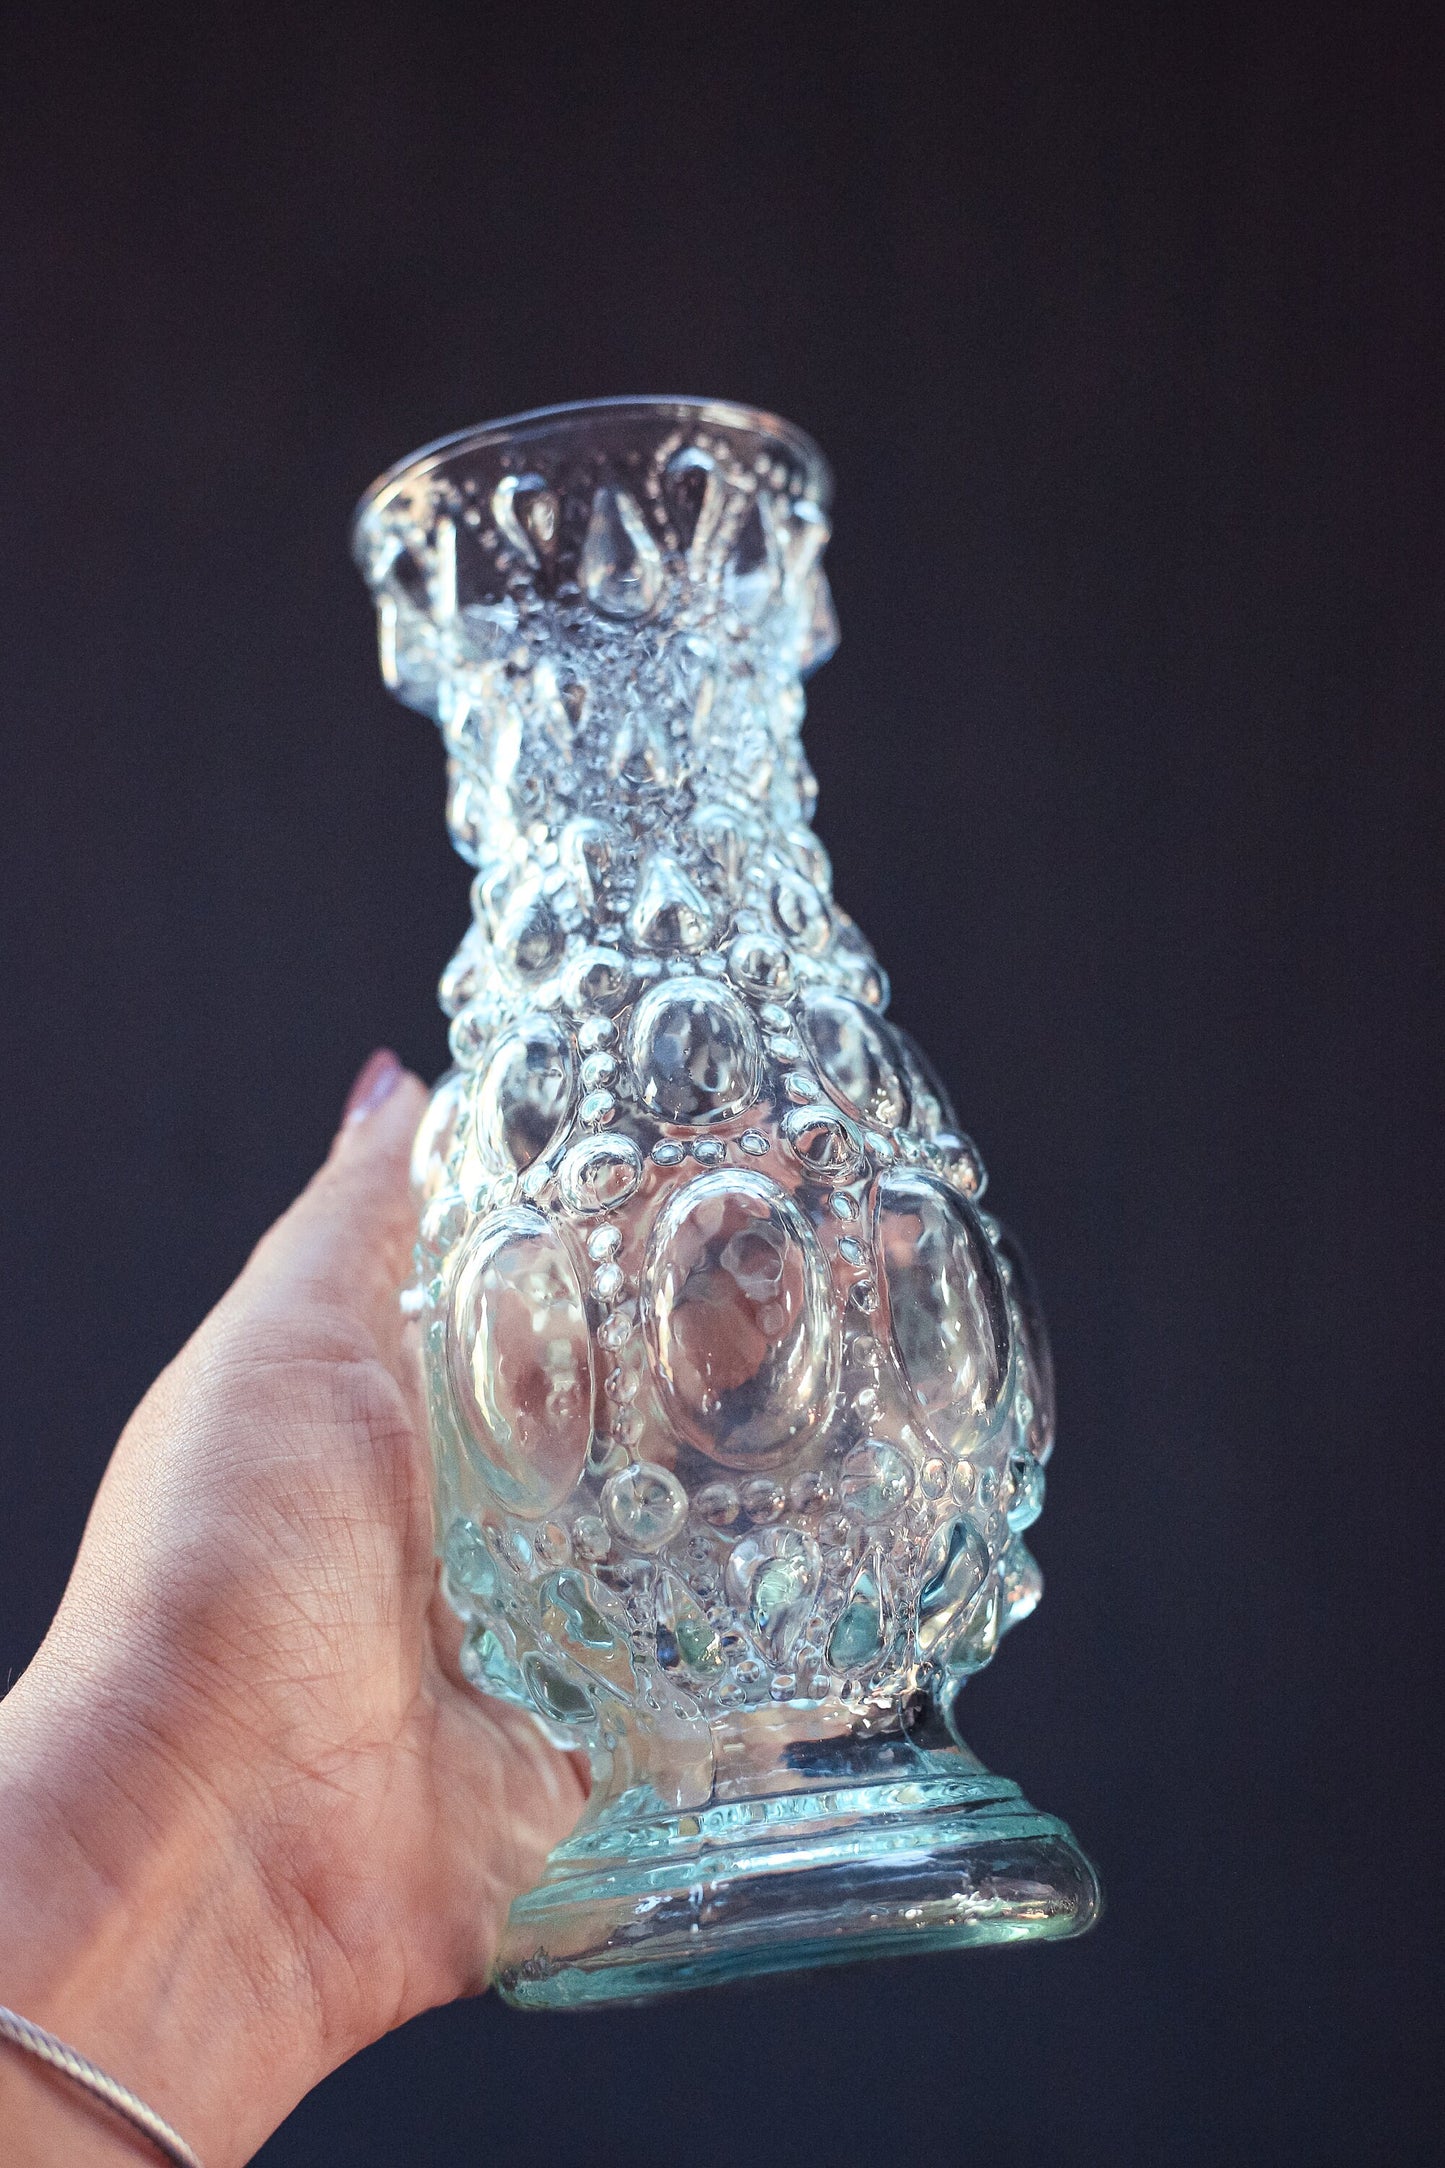 Light Blue Glass Vase with Bubble Texture - Vintage Glass Vase